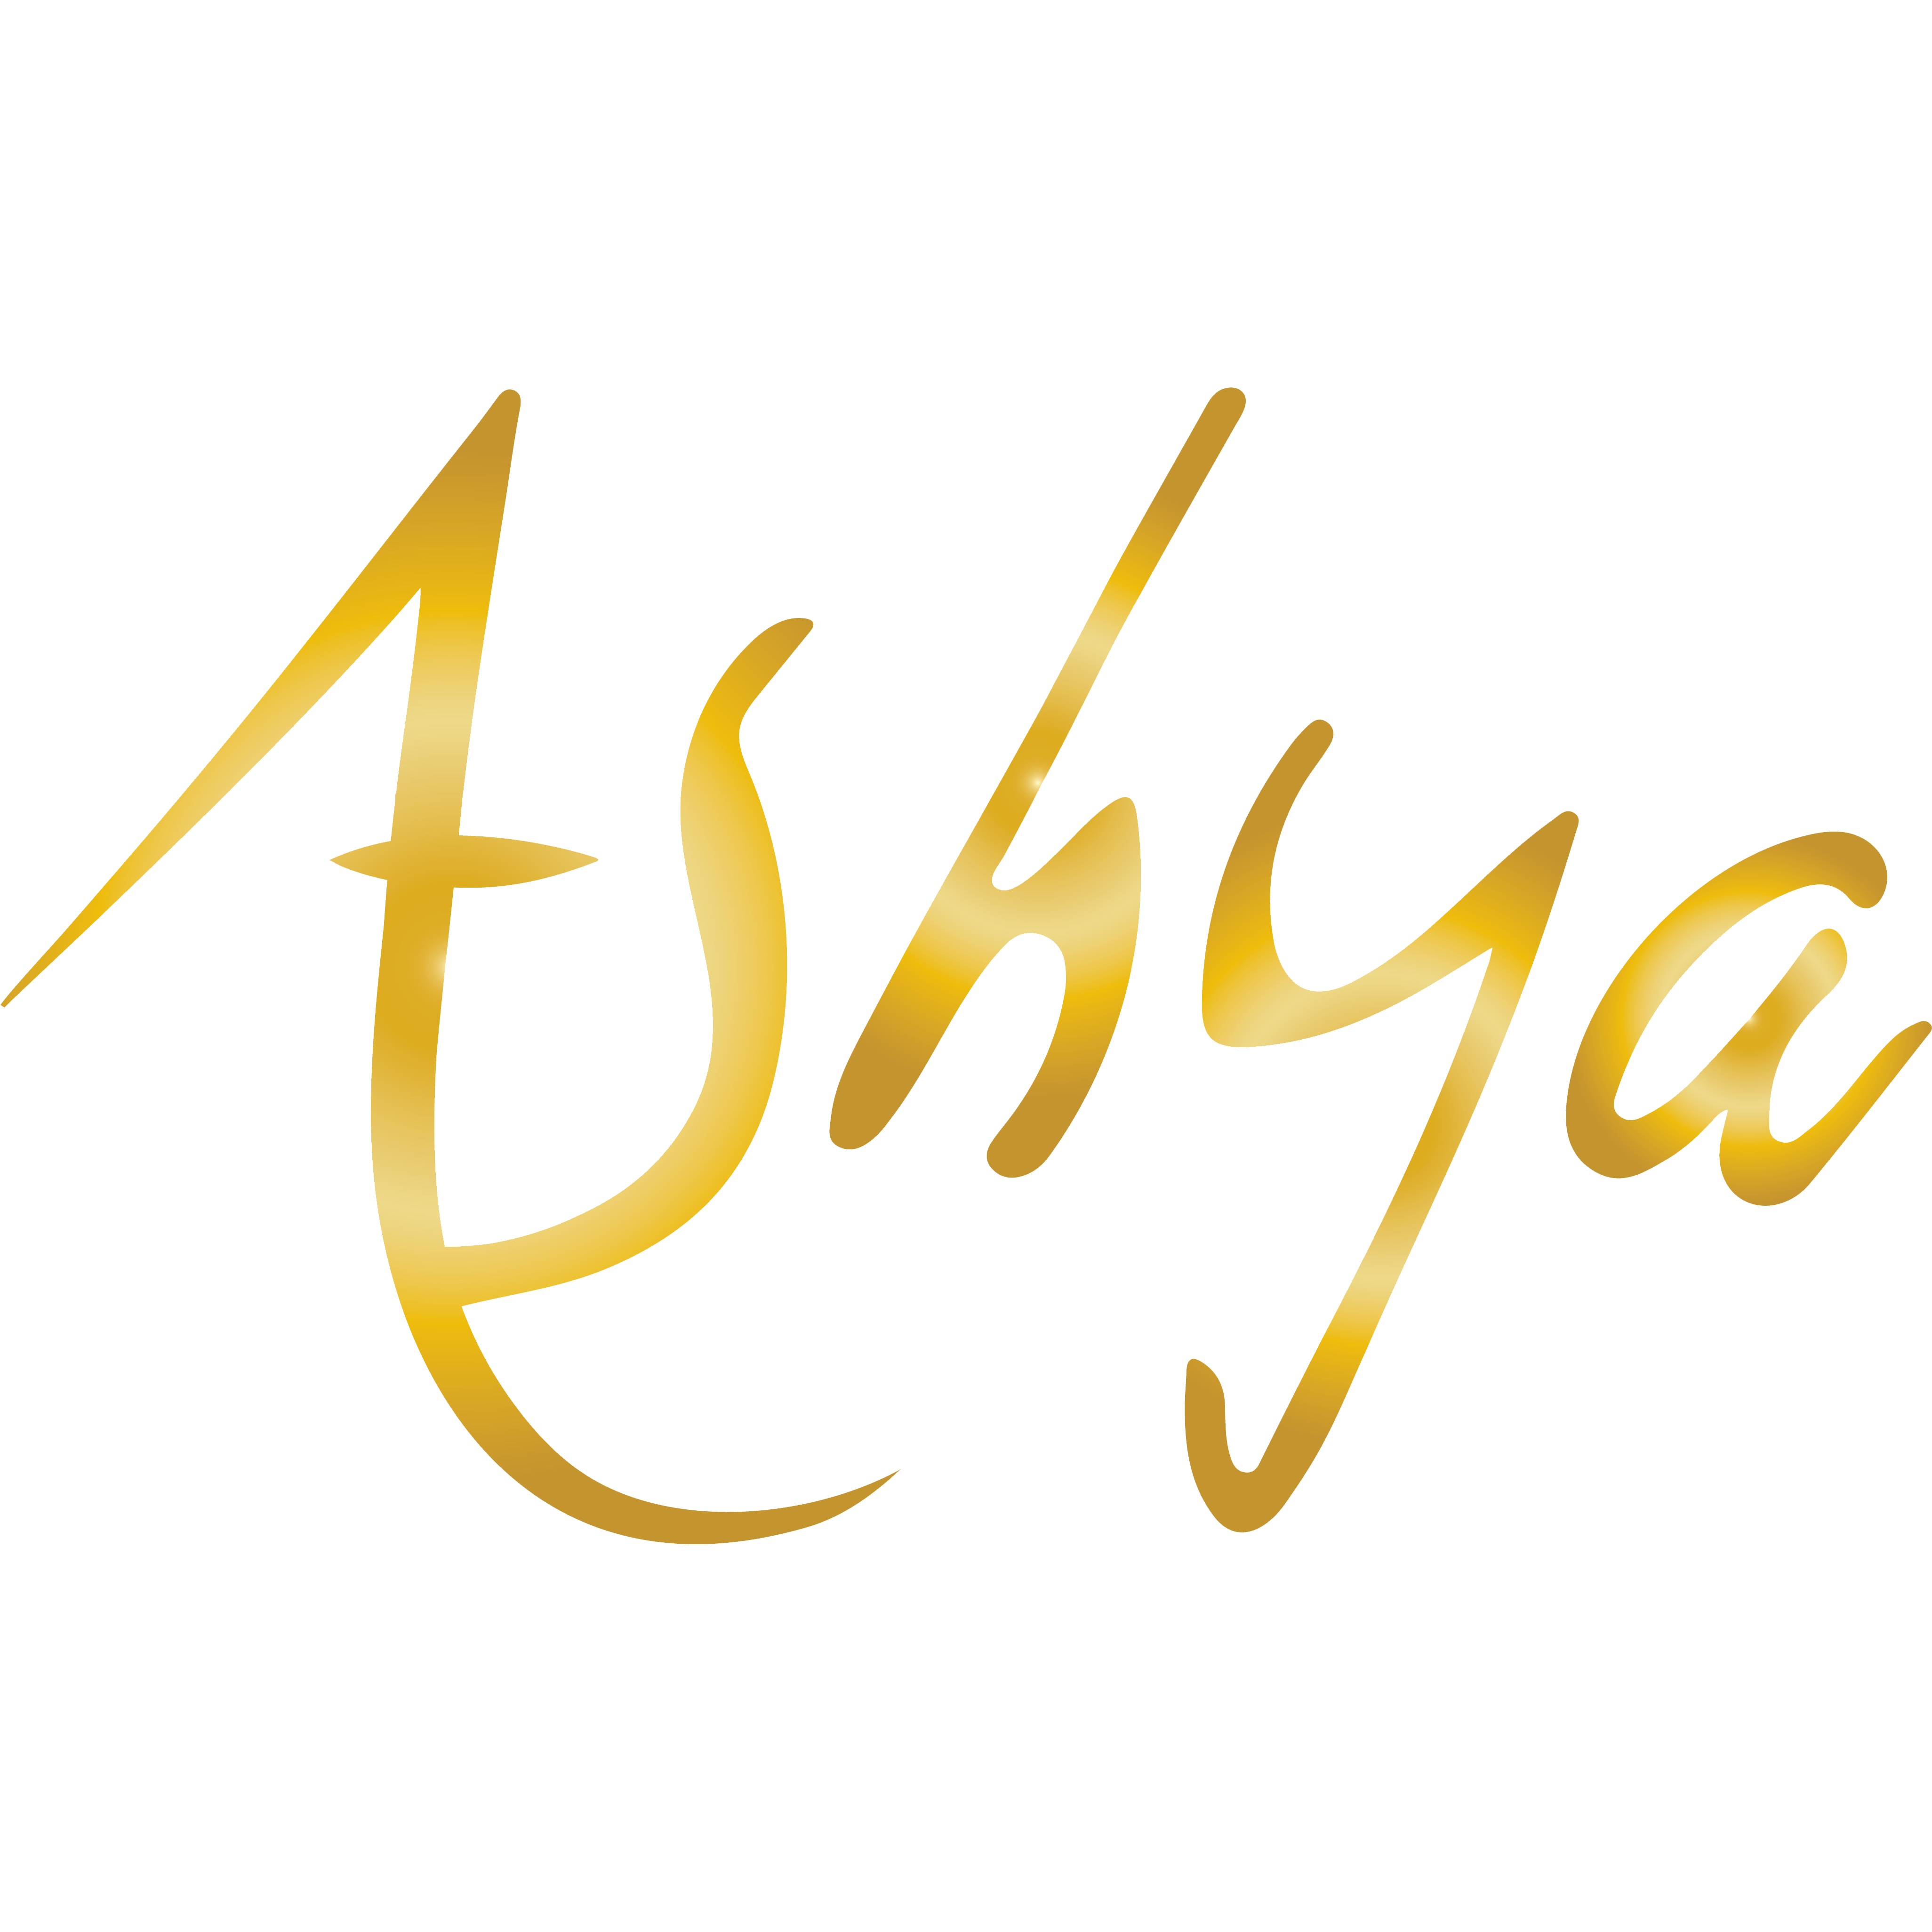 Ashya